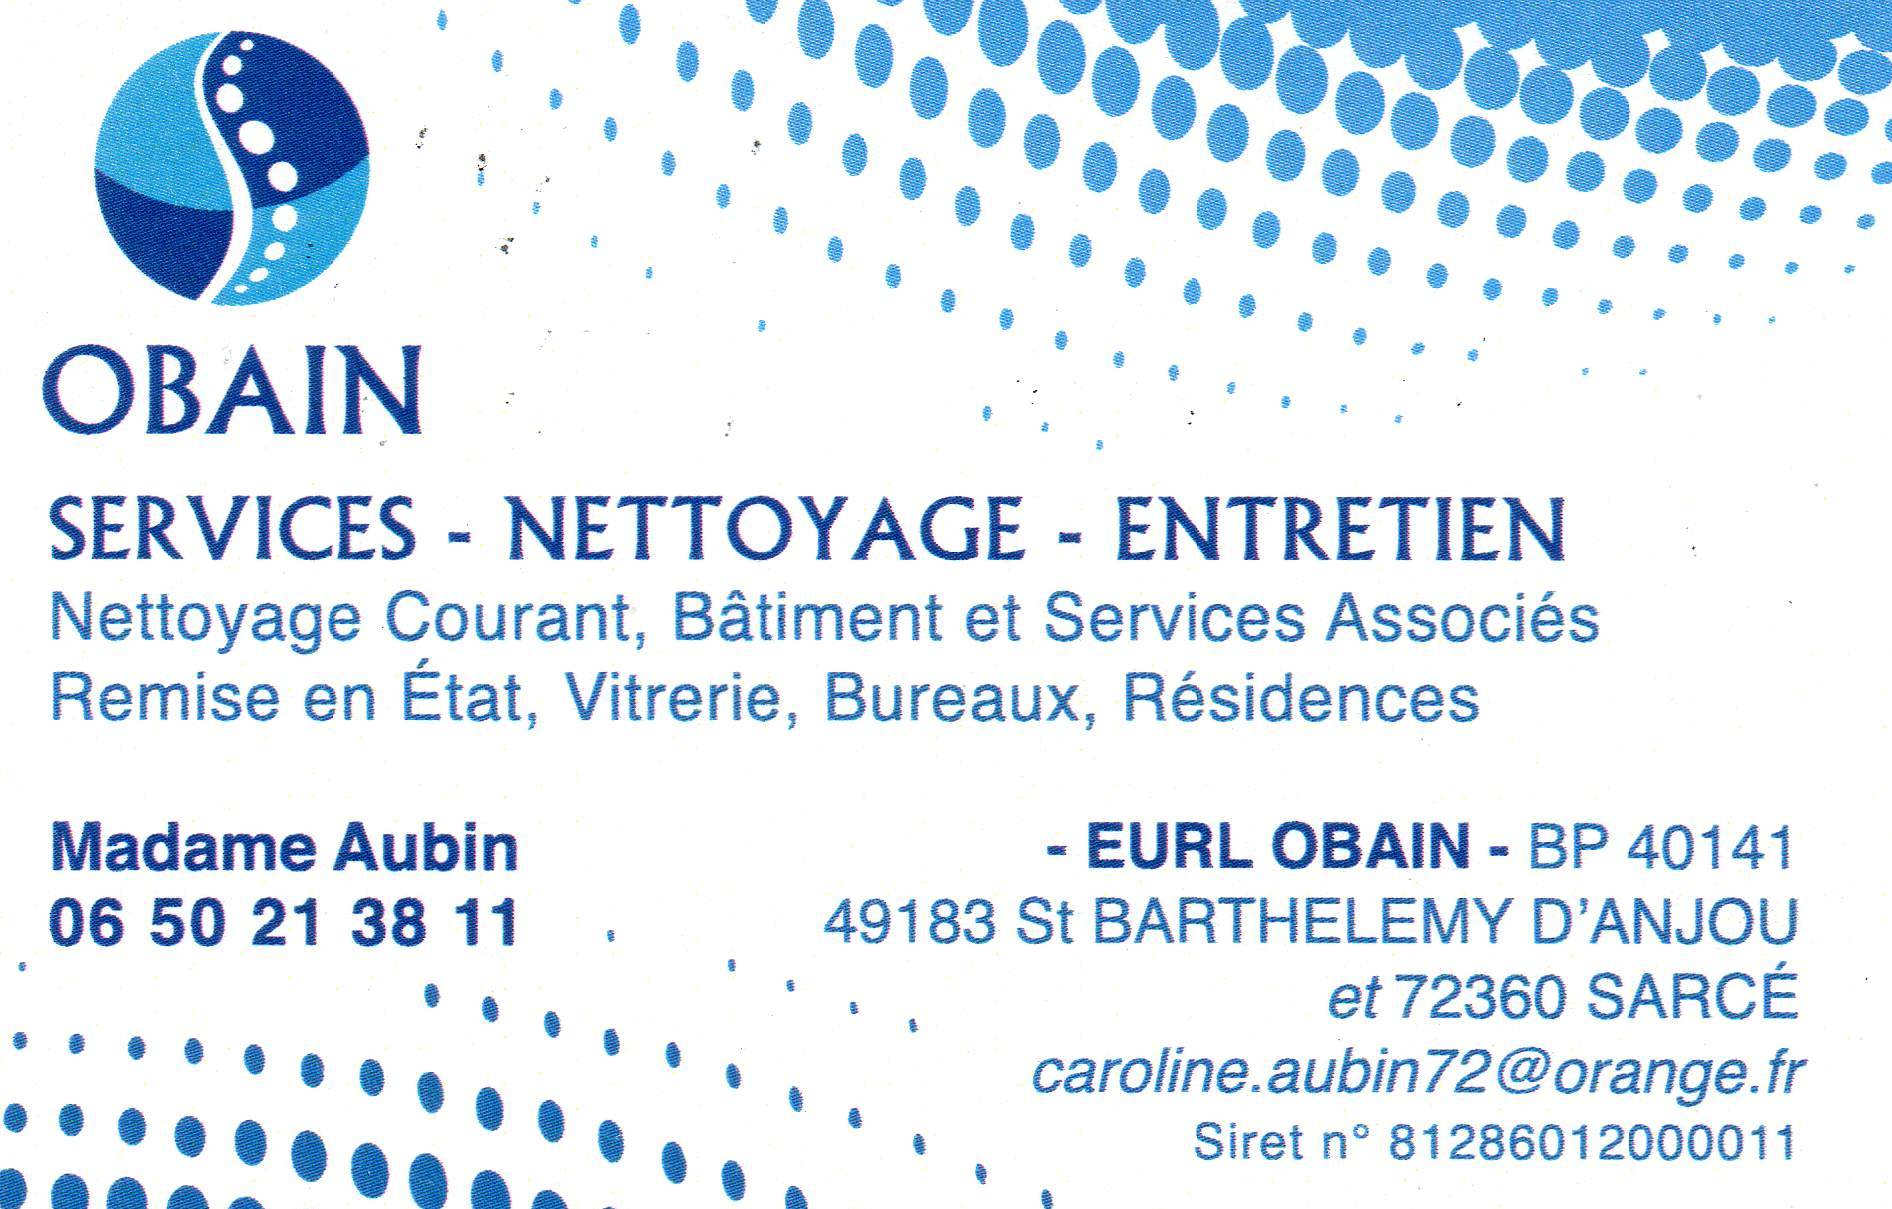 OBAIN NETTOYAGE ET SERVICE ASSOCIE - Société de nettoyage à Sarcé (72360) -  Adresse et téléphone sur l'annuaire Hoodspot